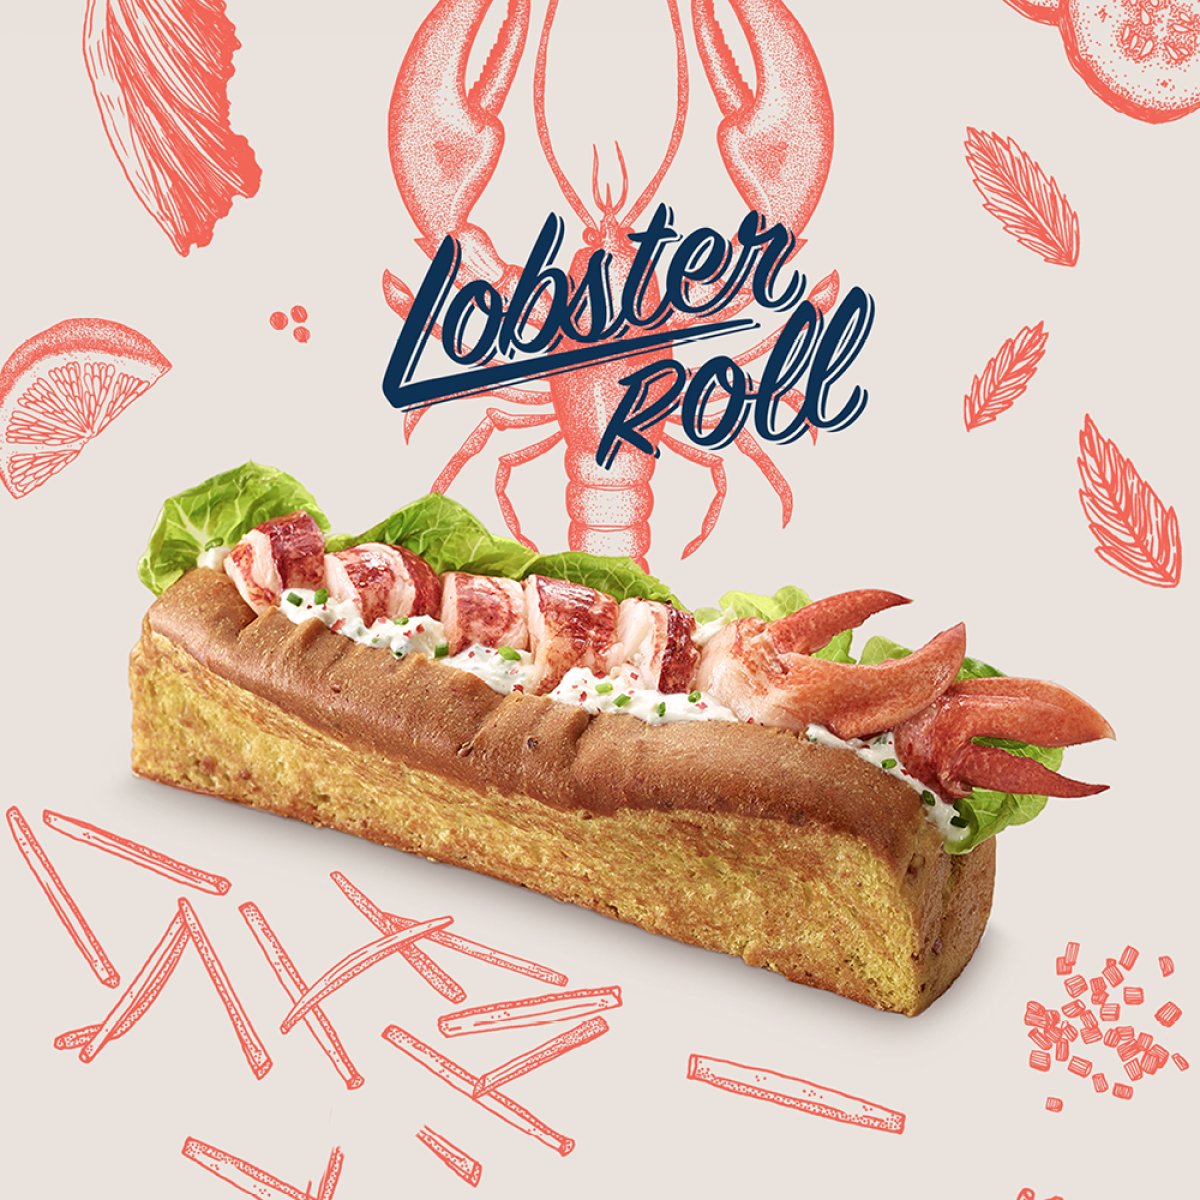 Lobster Roll warta spróbowania! Limitowana pozycja w menu w hotelu Campanile Warszawa!